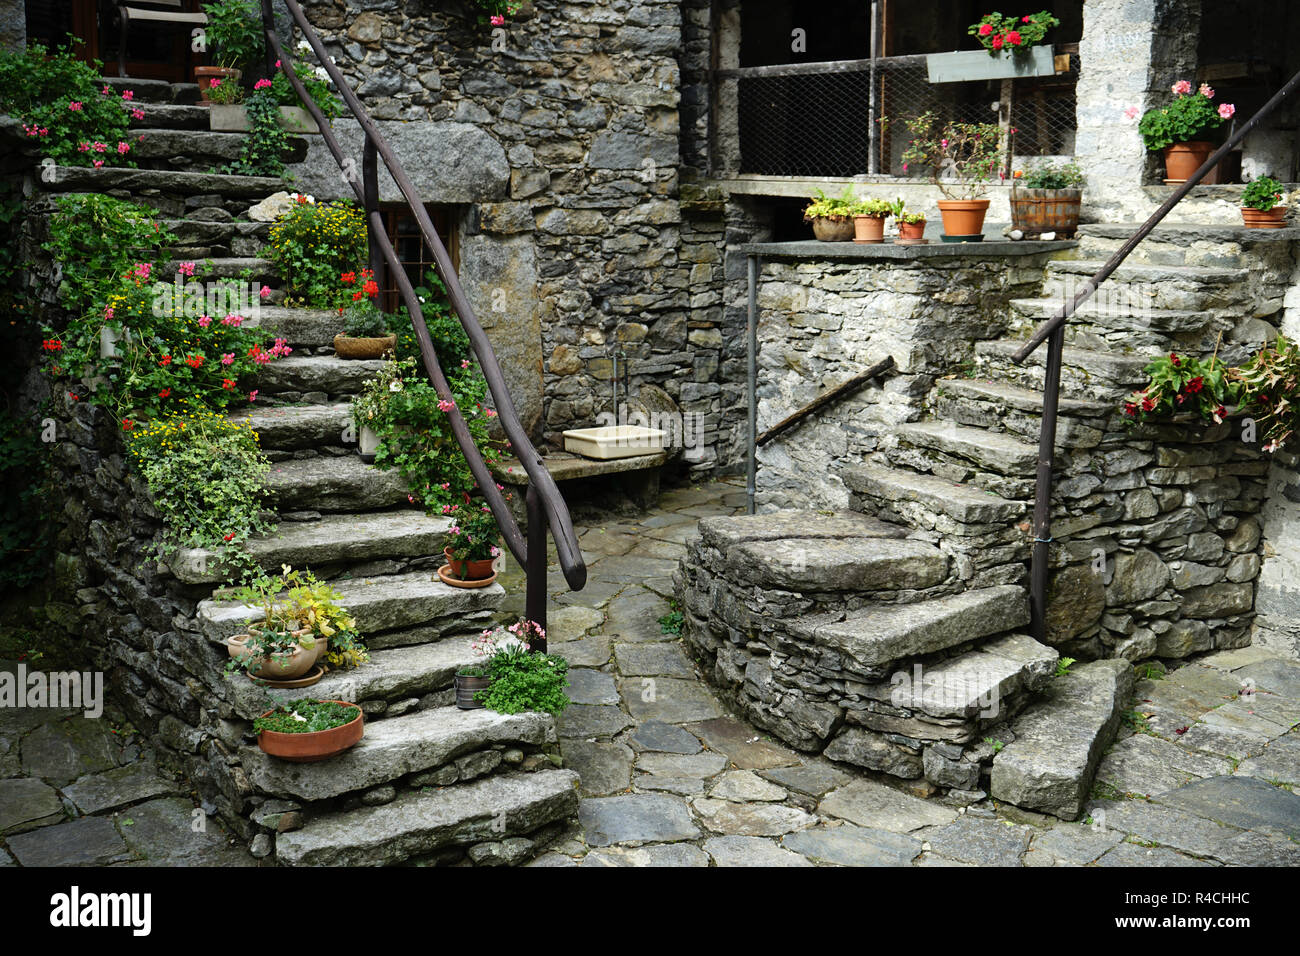 Rock des escaliers à townsquare dans vieux village, Sonlerto Val Bavona, Tcicino, Suisse Banque D'Images